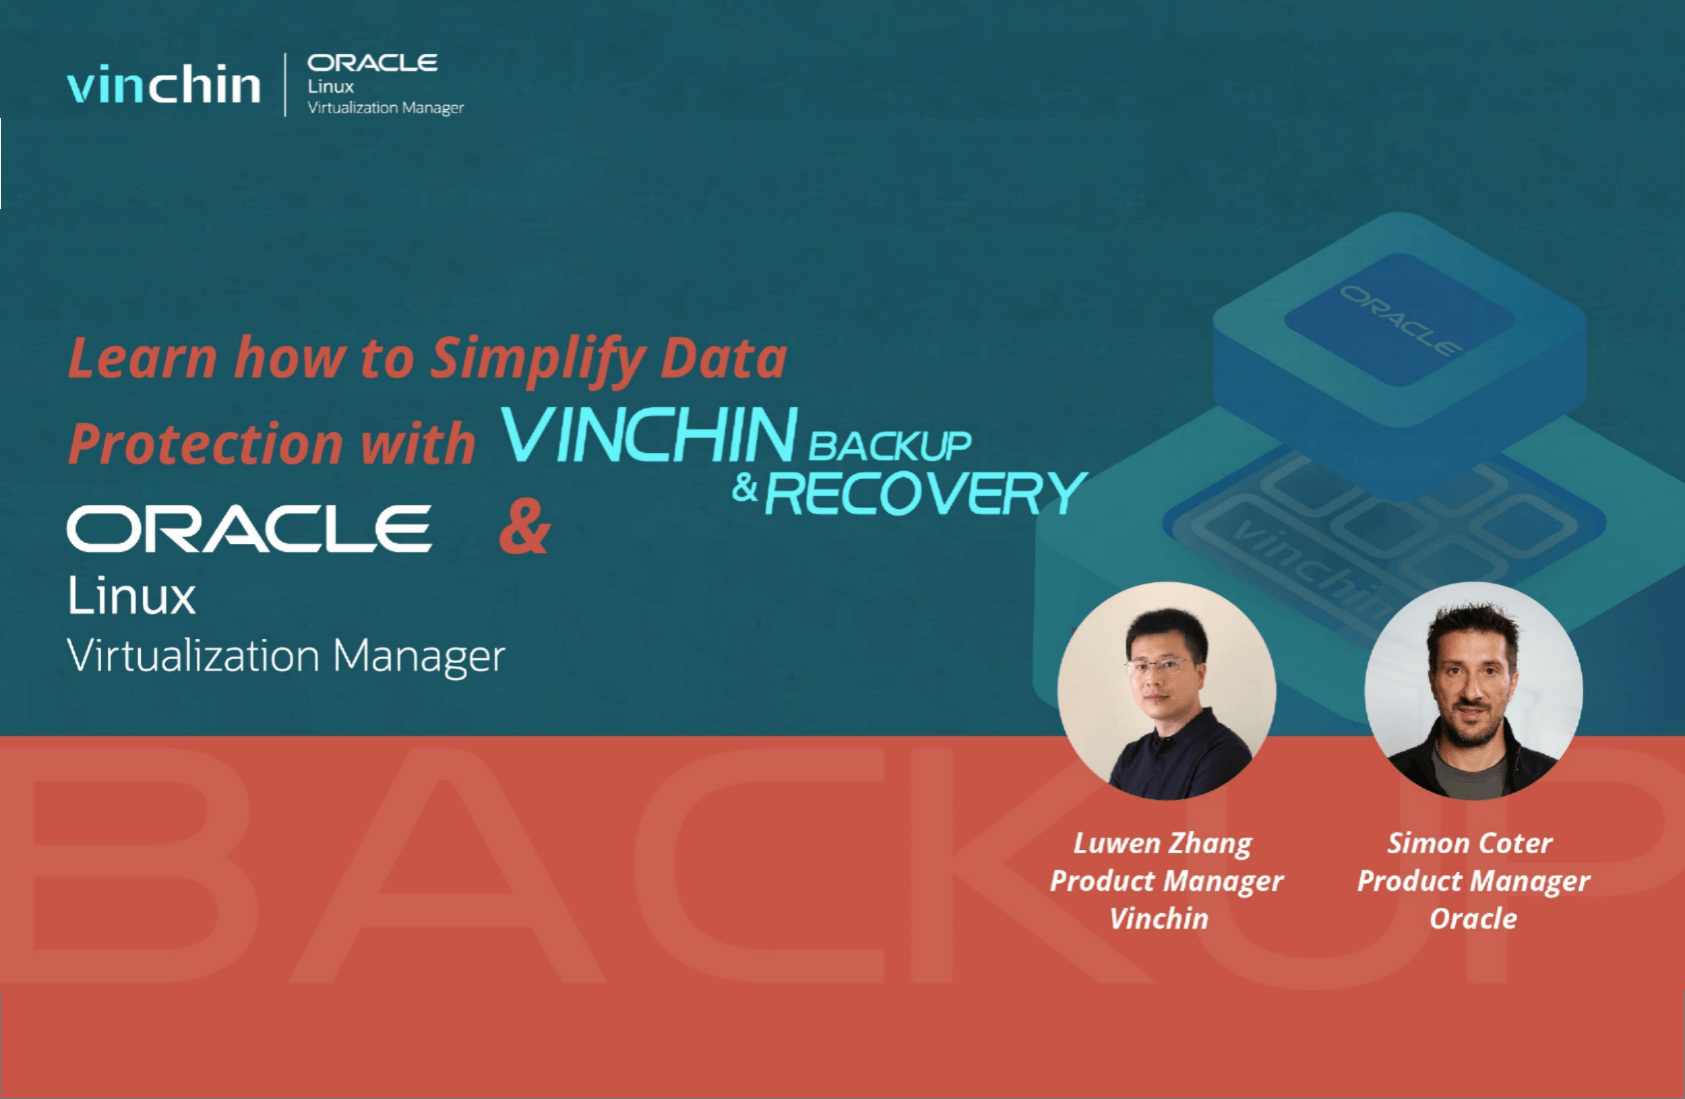 Vinchin × Oracle | Vinchin Backup & RecoveryとOracle Linux Virtualization Managerでデータ保護をシンプルにする方法を学びましょう